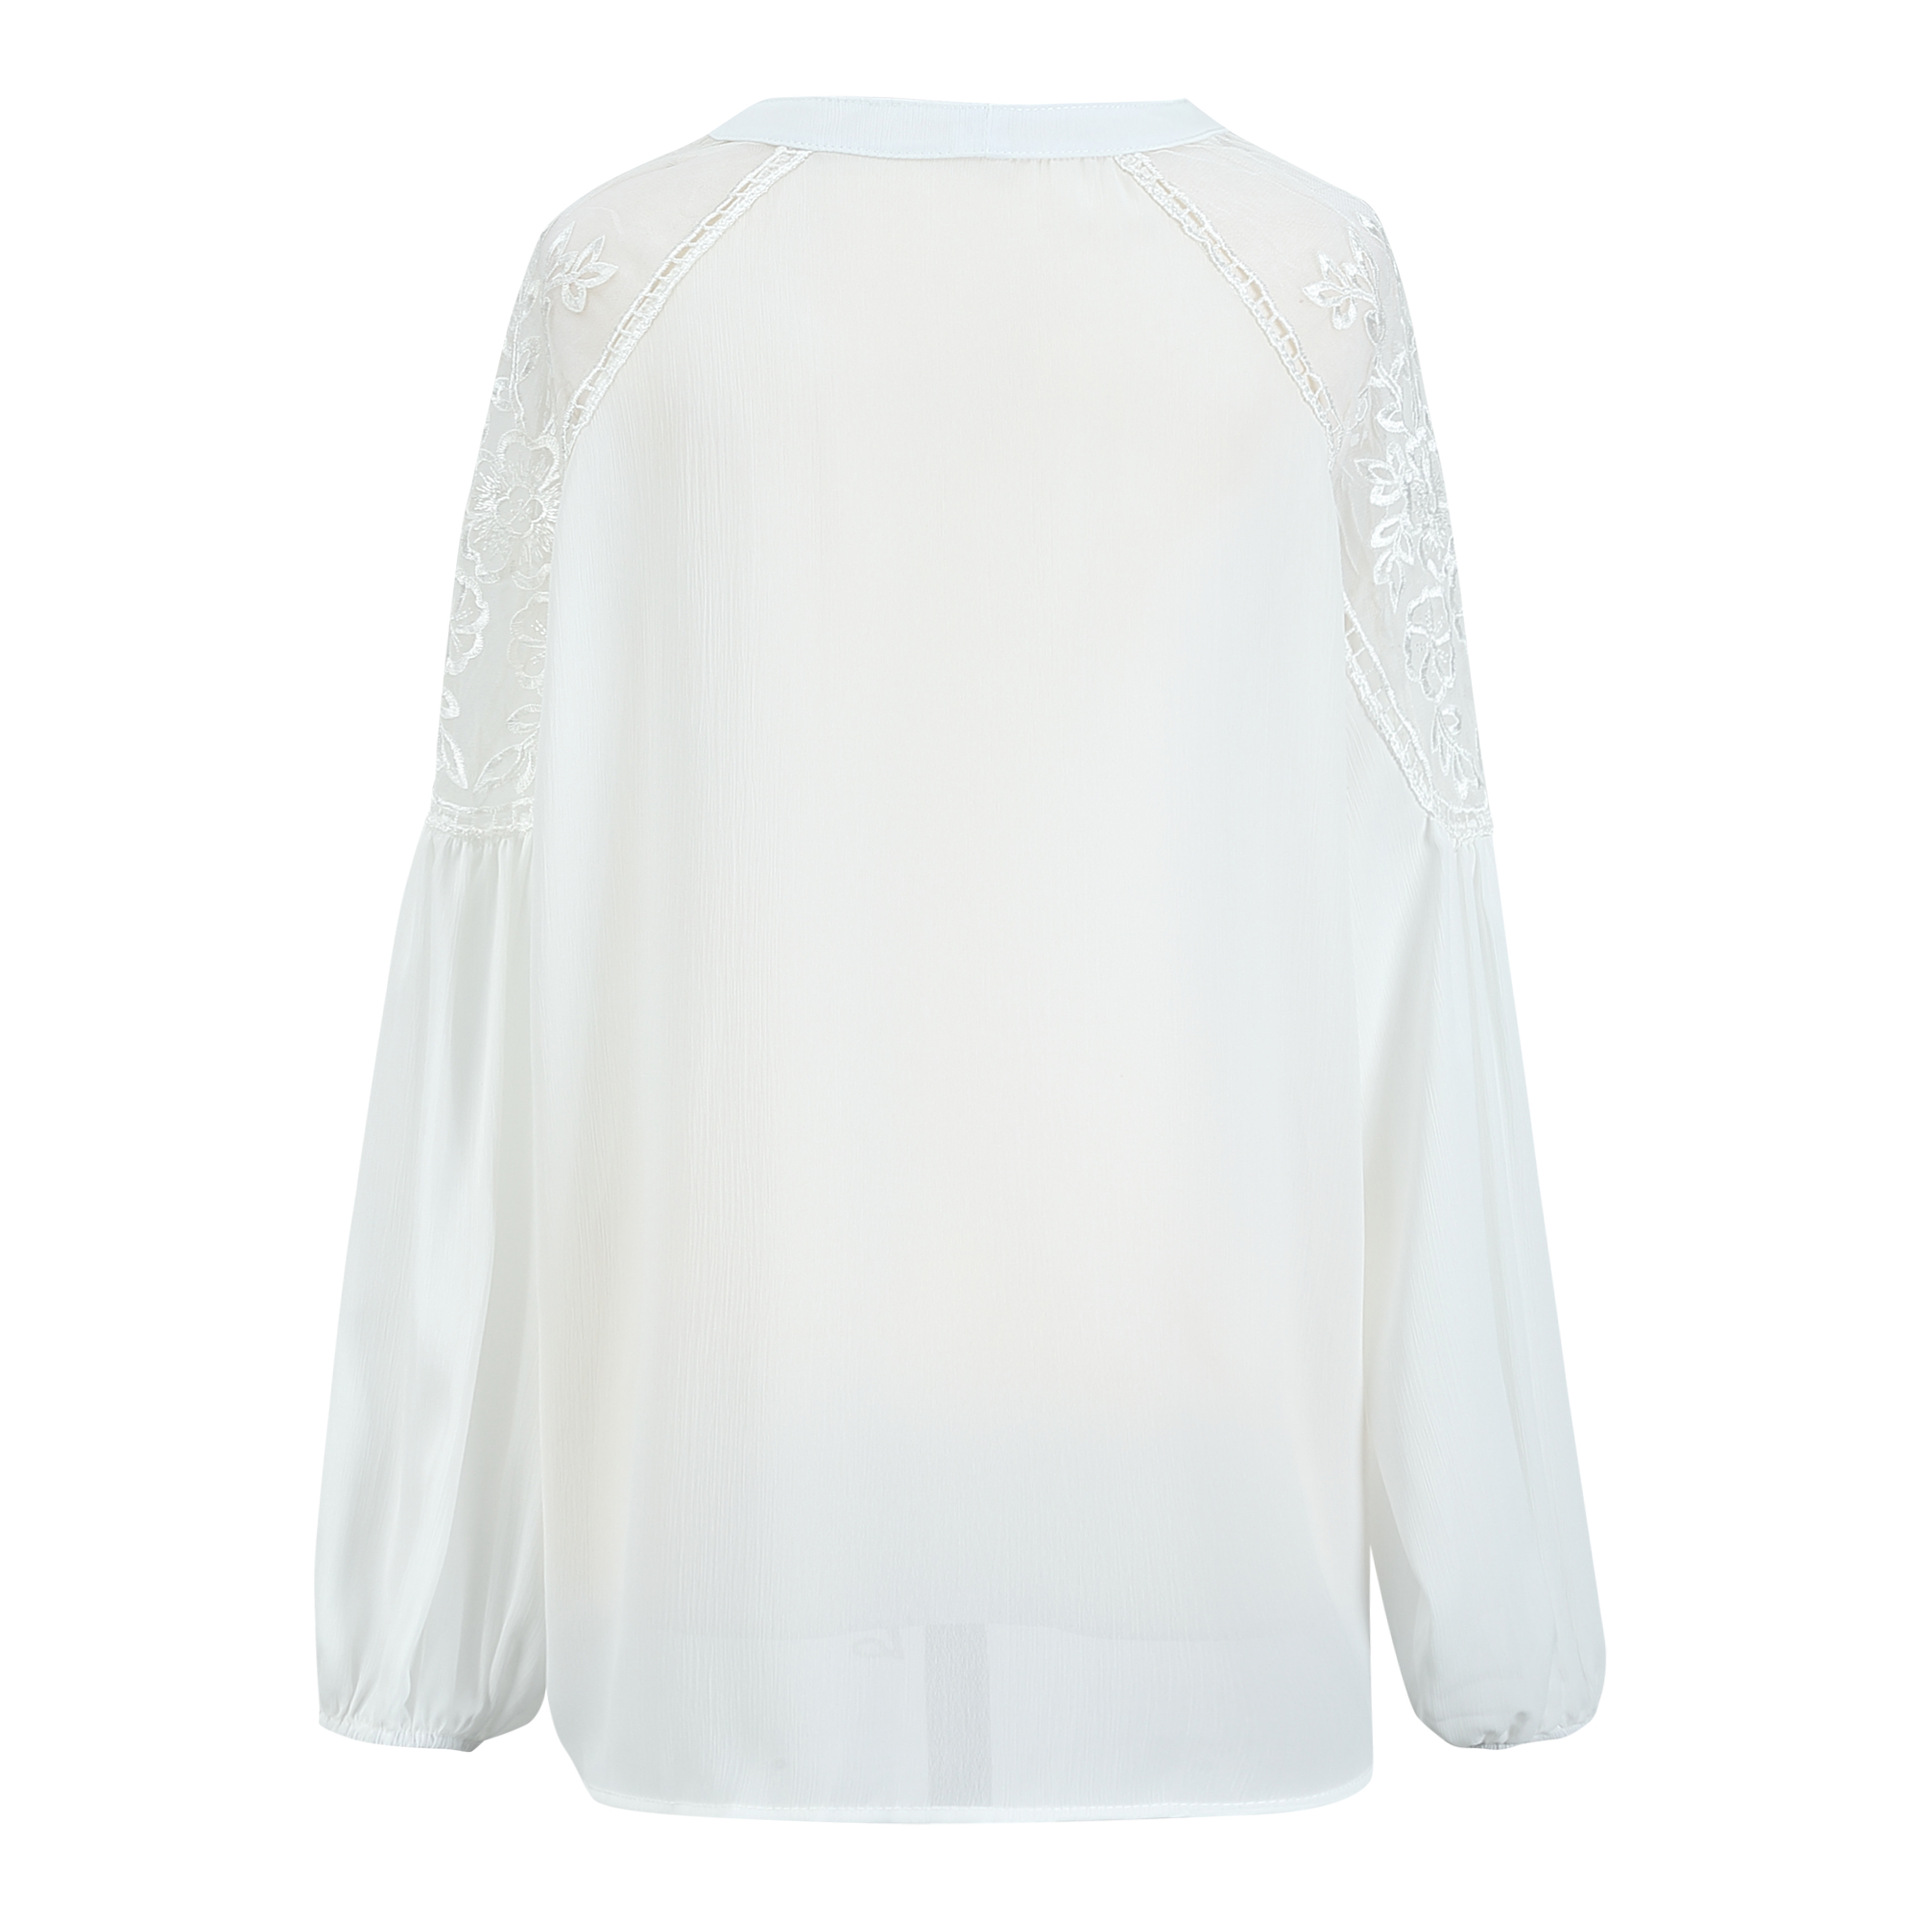 Boho white lace blouse free size Uk8-14blouse